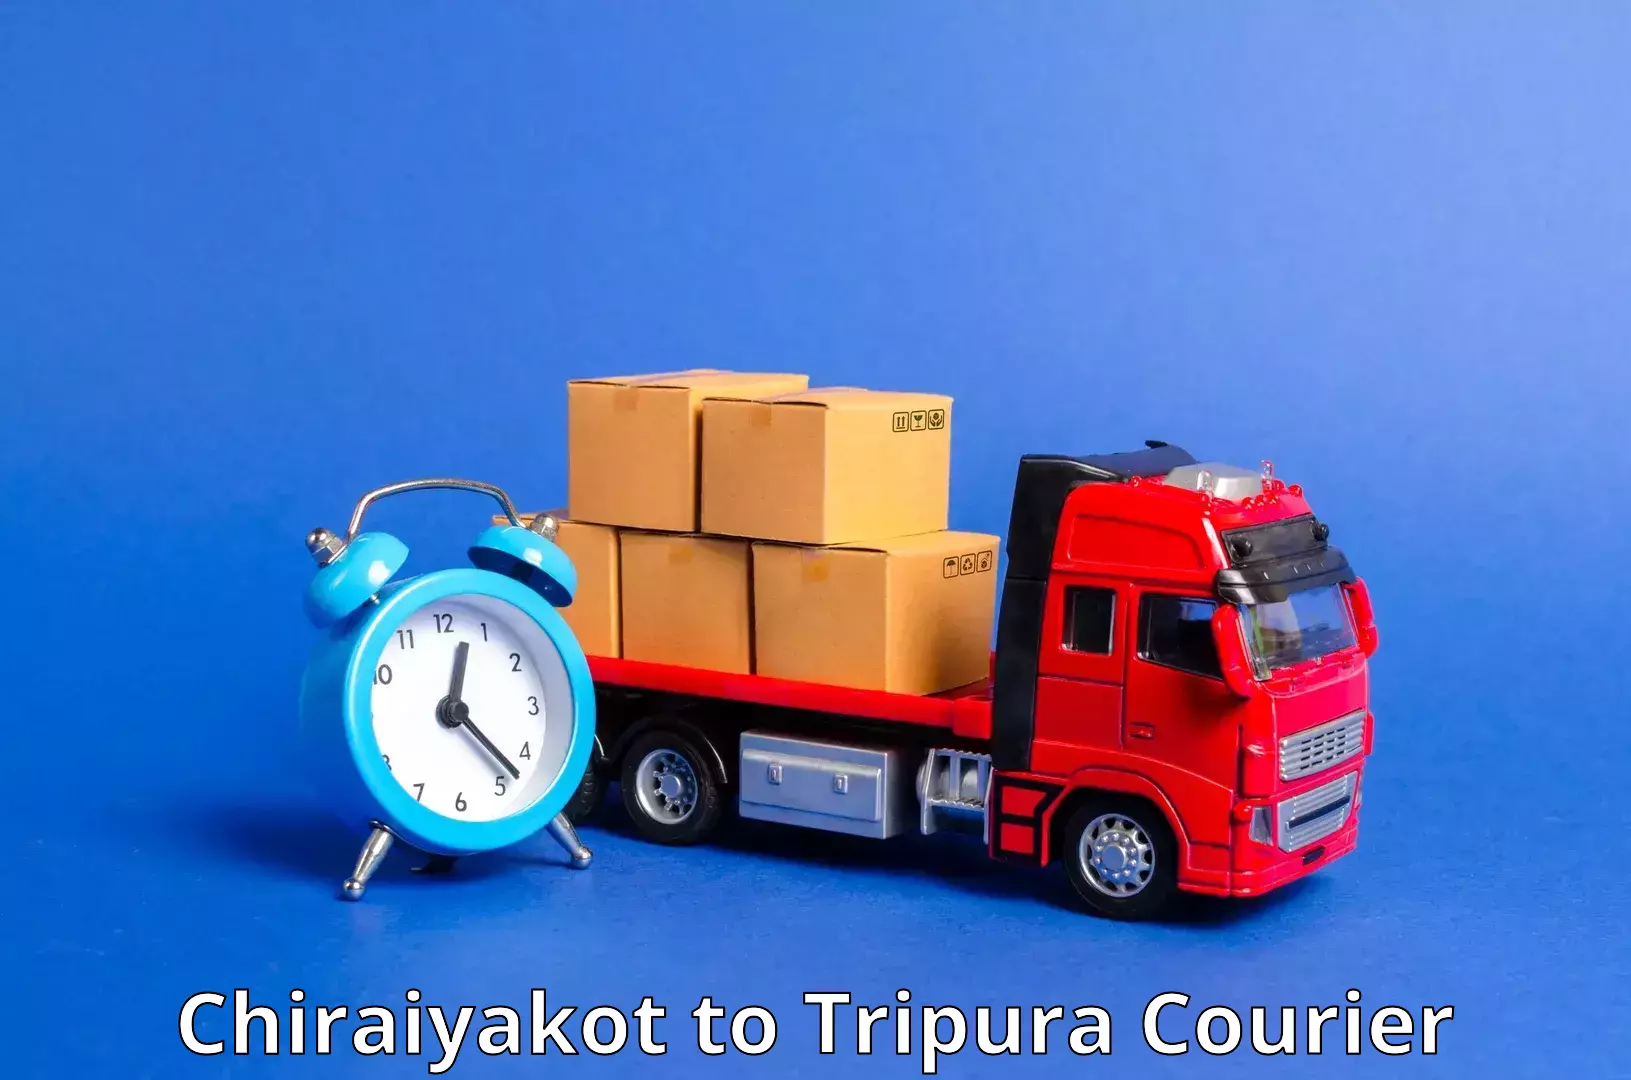 Multi-city courier Chiraiyakot to Kailashahar